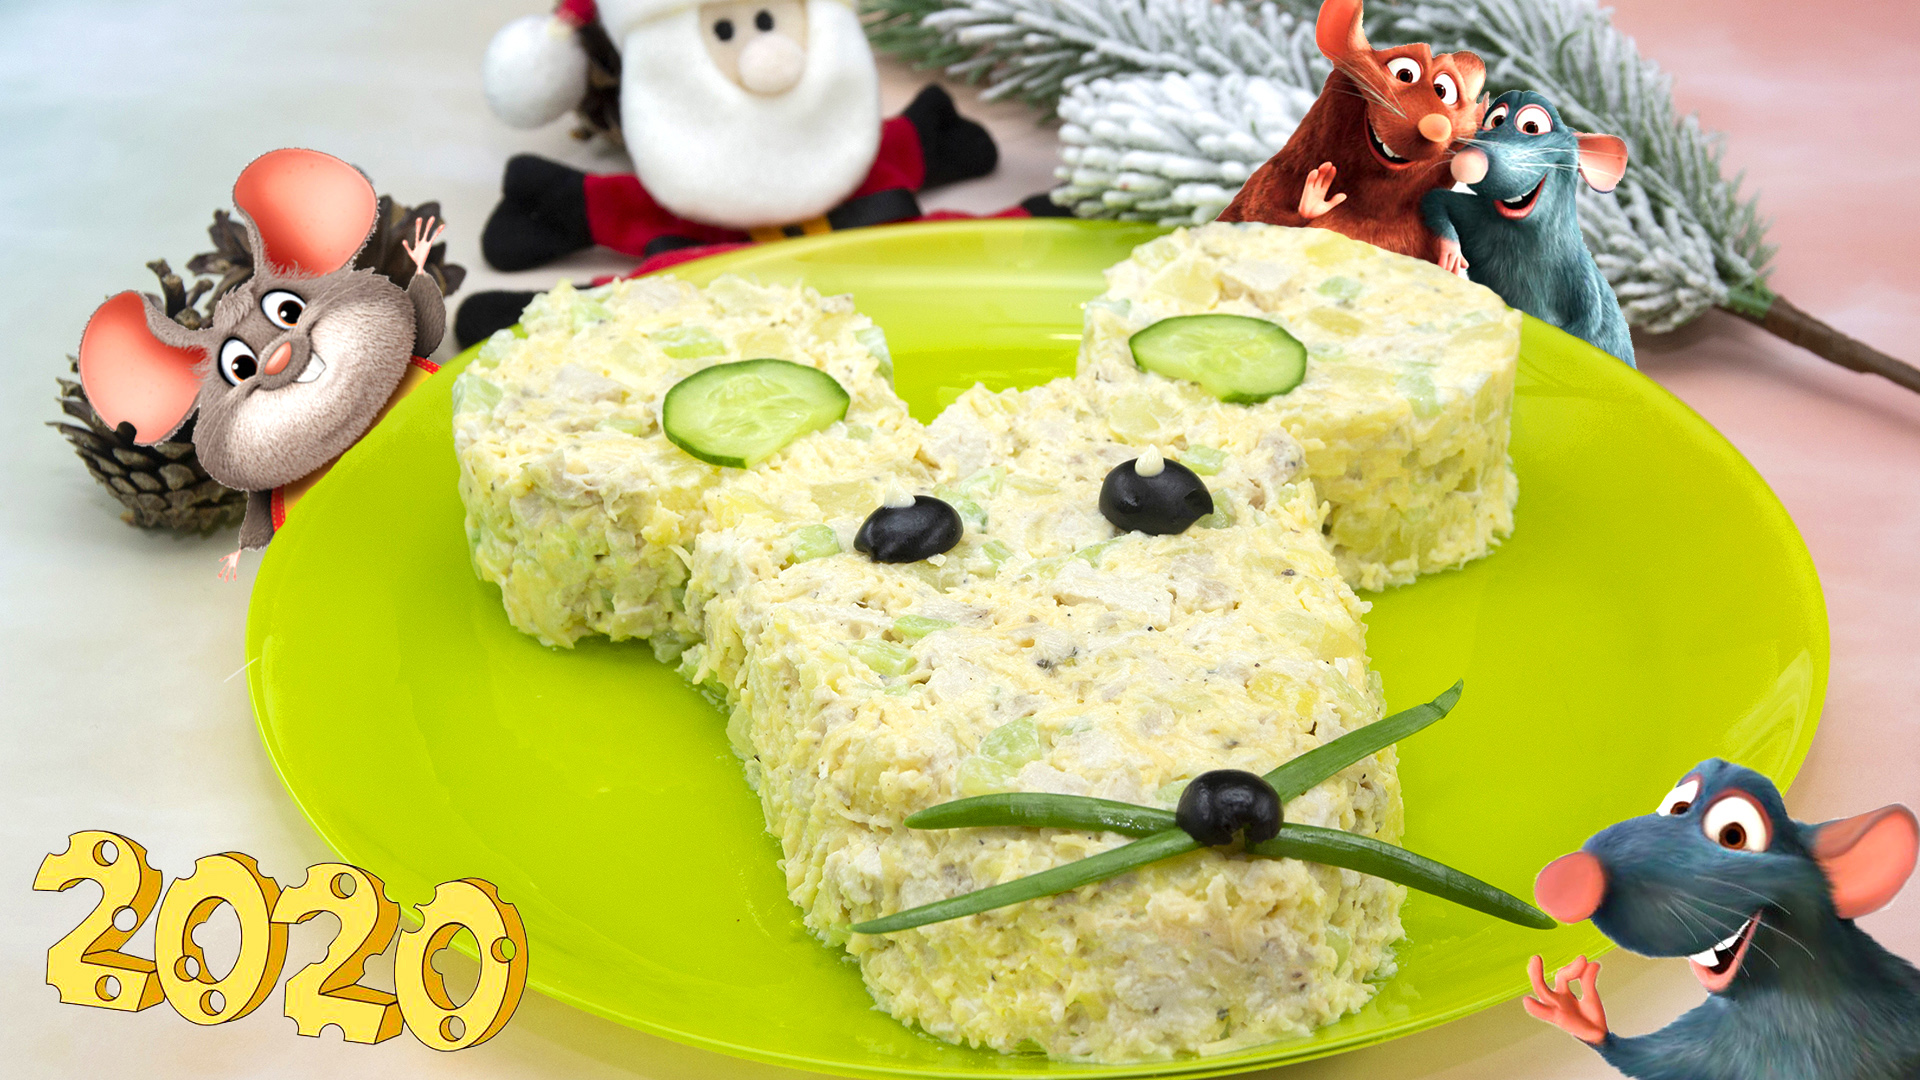 Новогодний Салат "Мышка" Очень Вкусно и Красиво!!! / Праздничный Салат / Salad Mouse